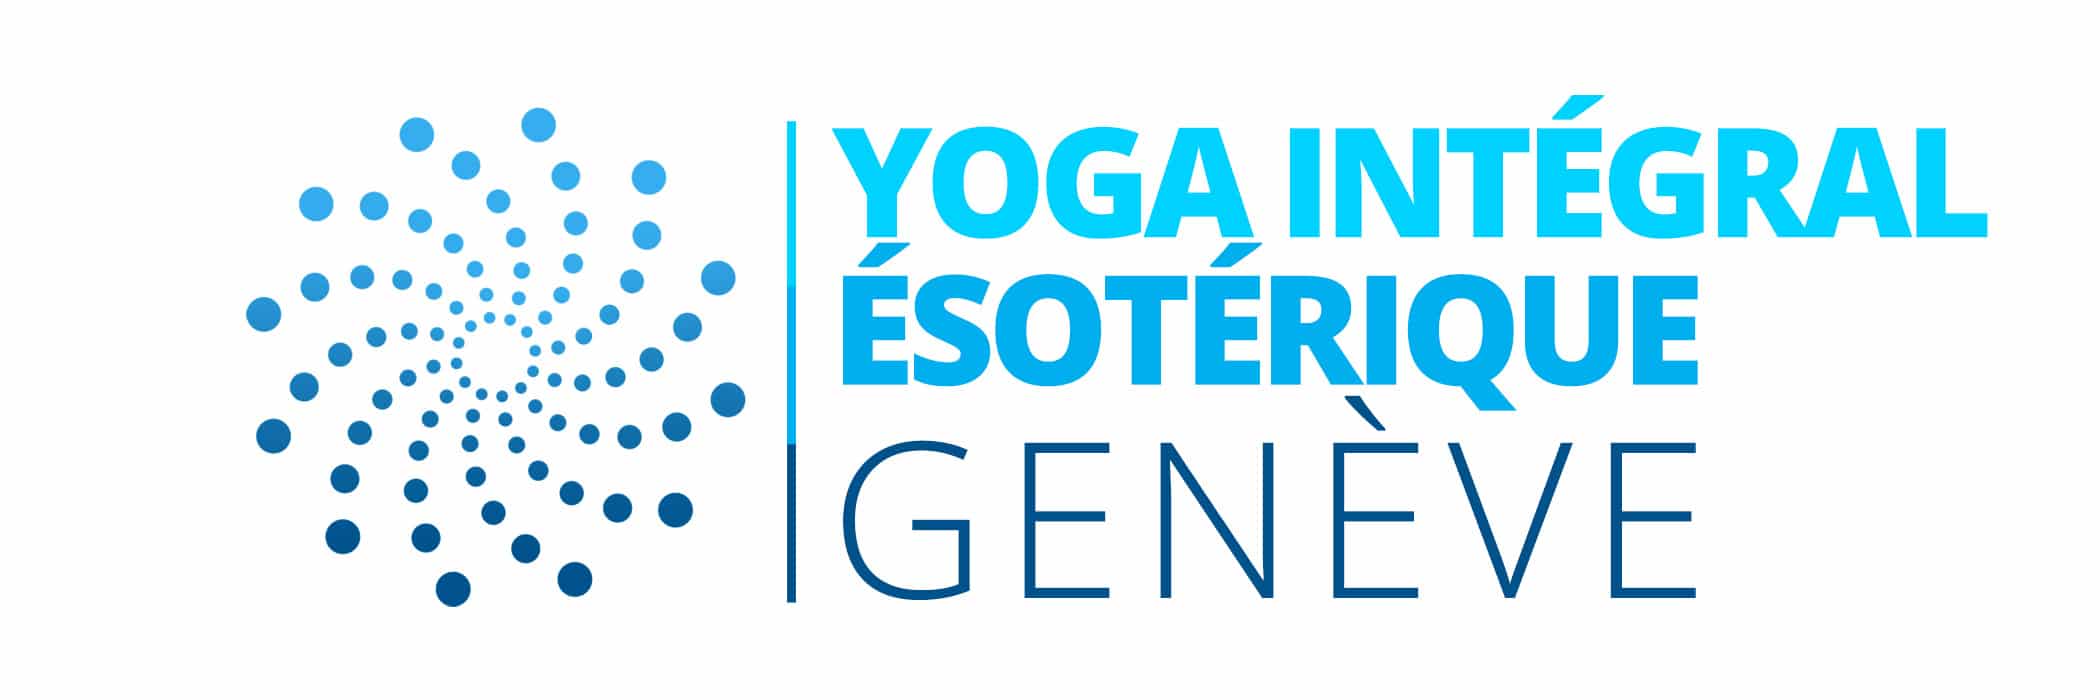 Yoga Integral Esotérique